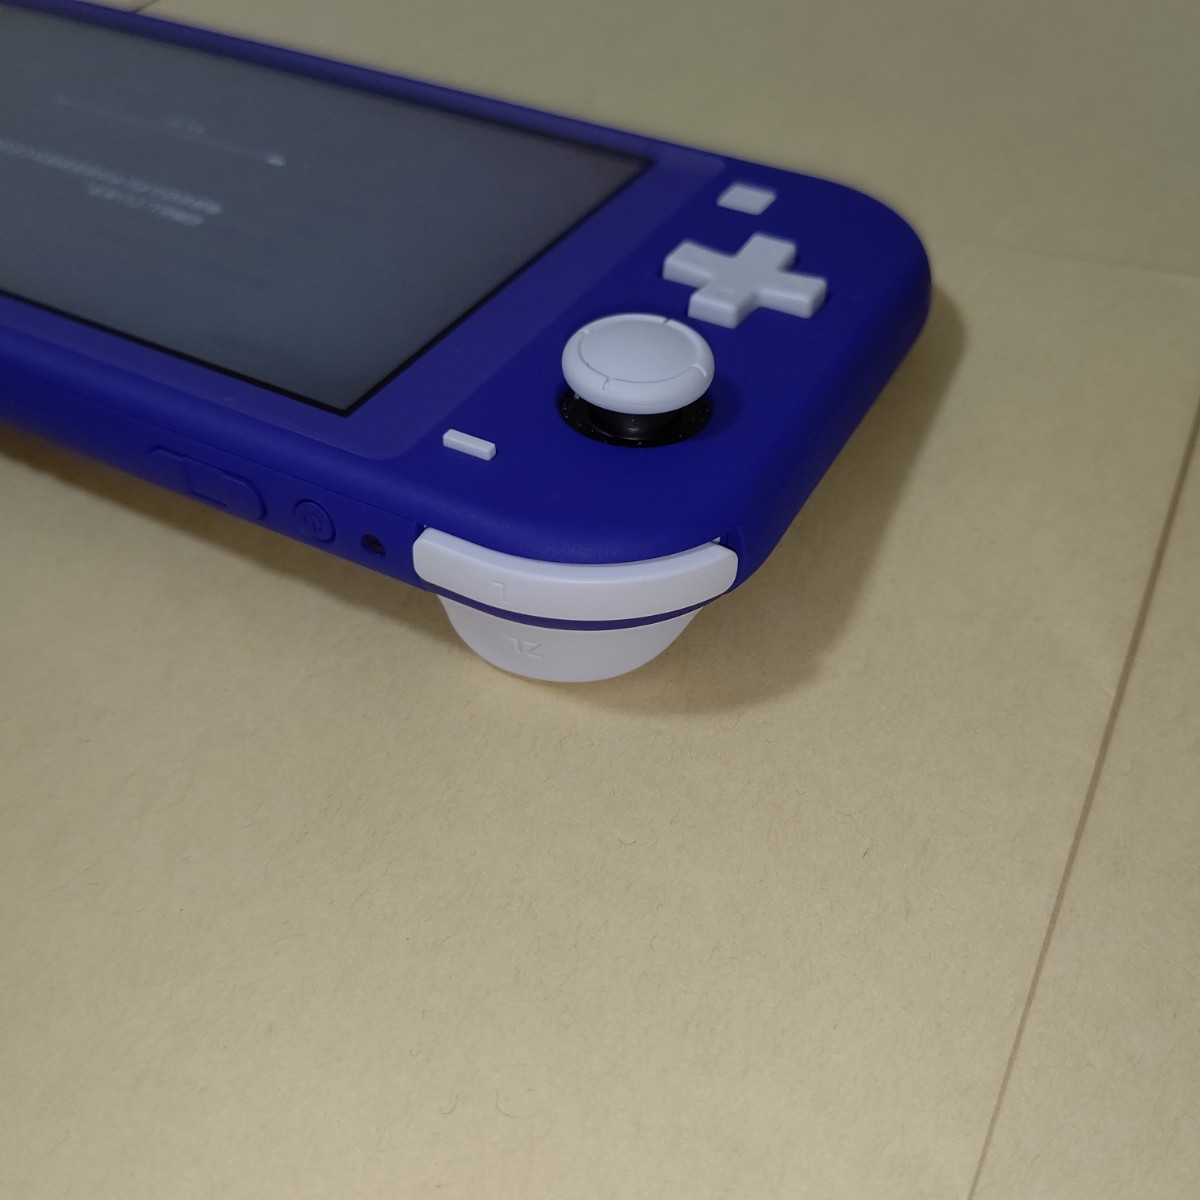 Nintendo Switch Lite 本体のみ 新色 ブルー スイッチライト